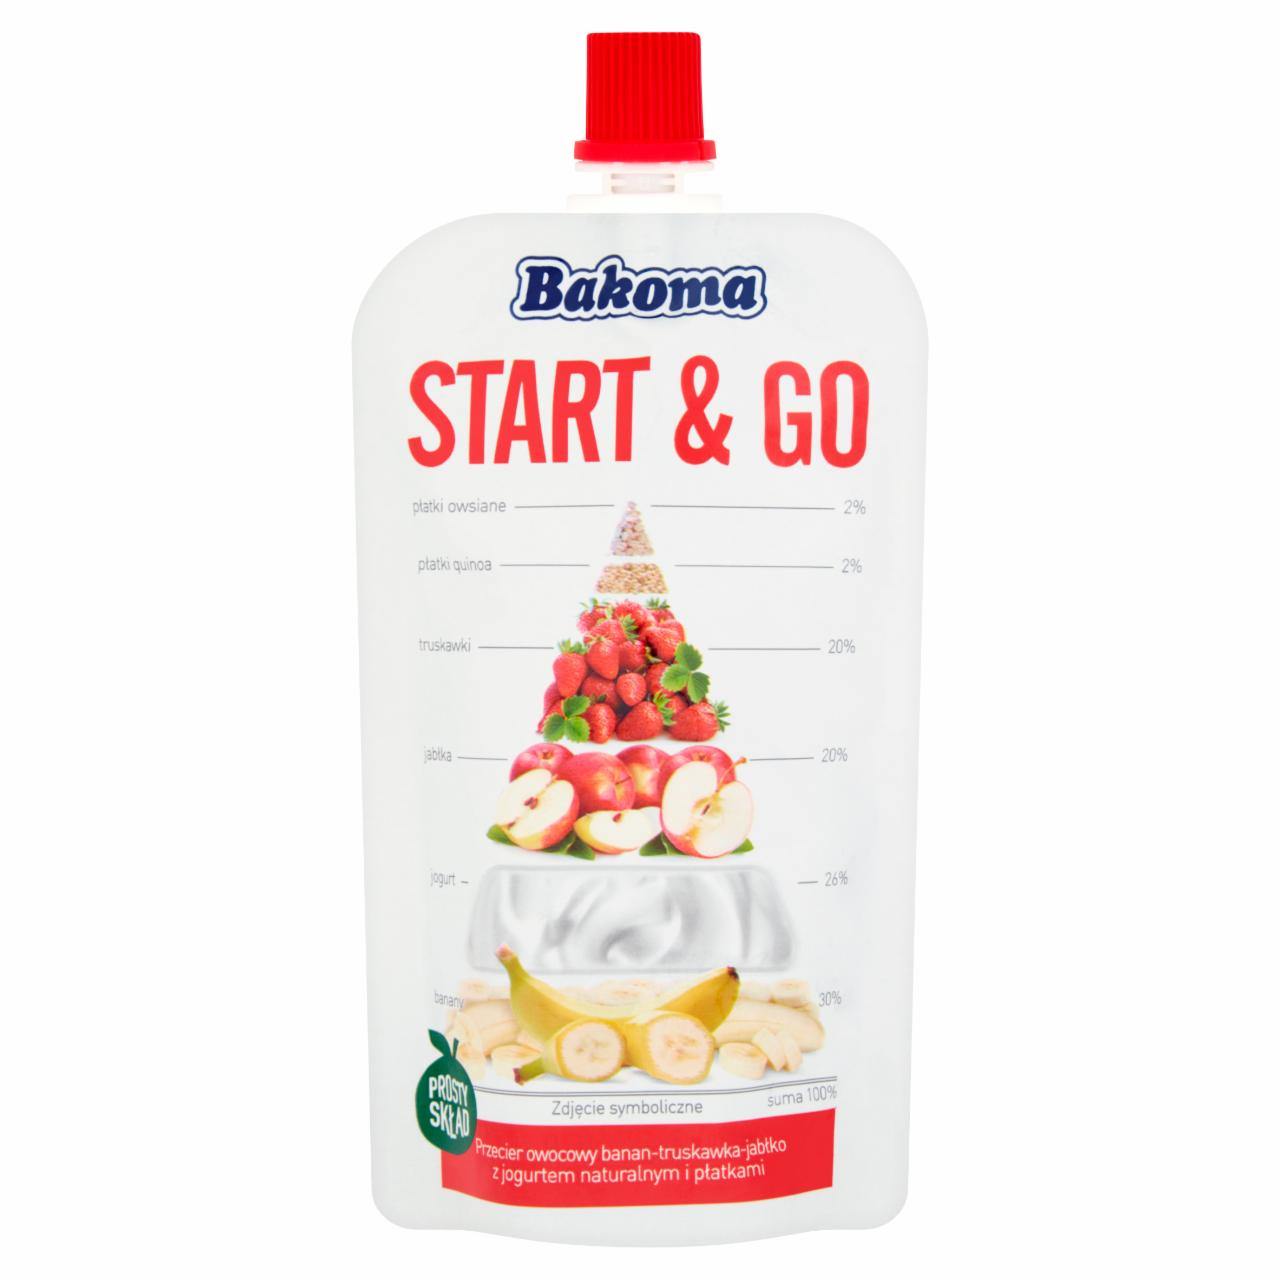 Zdjęcia - Bakoma Start & Go Przecier owocowy banan-truskawka-jabłko 120 g